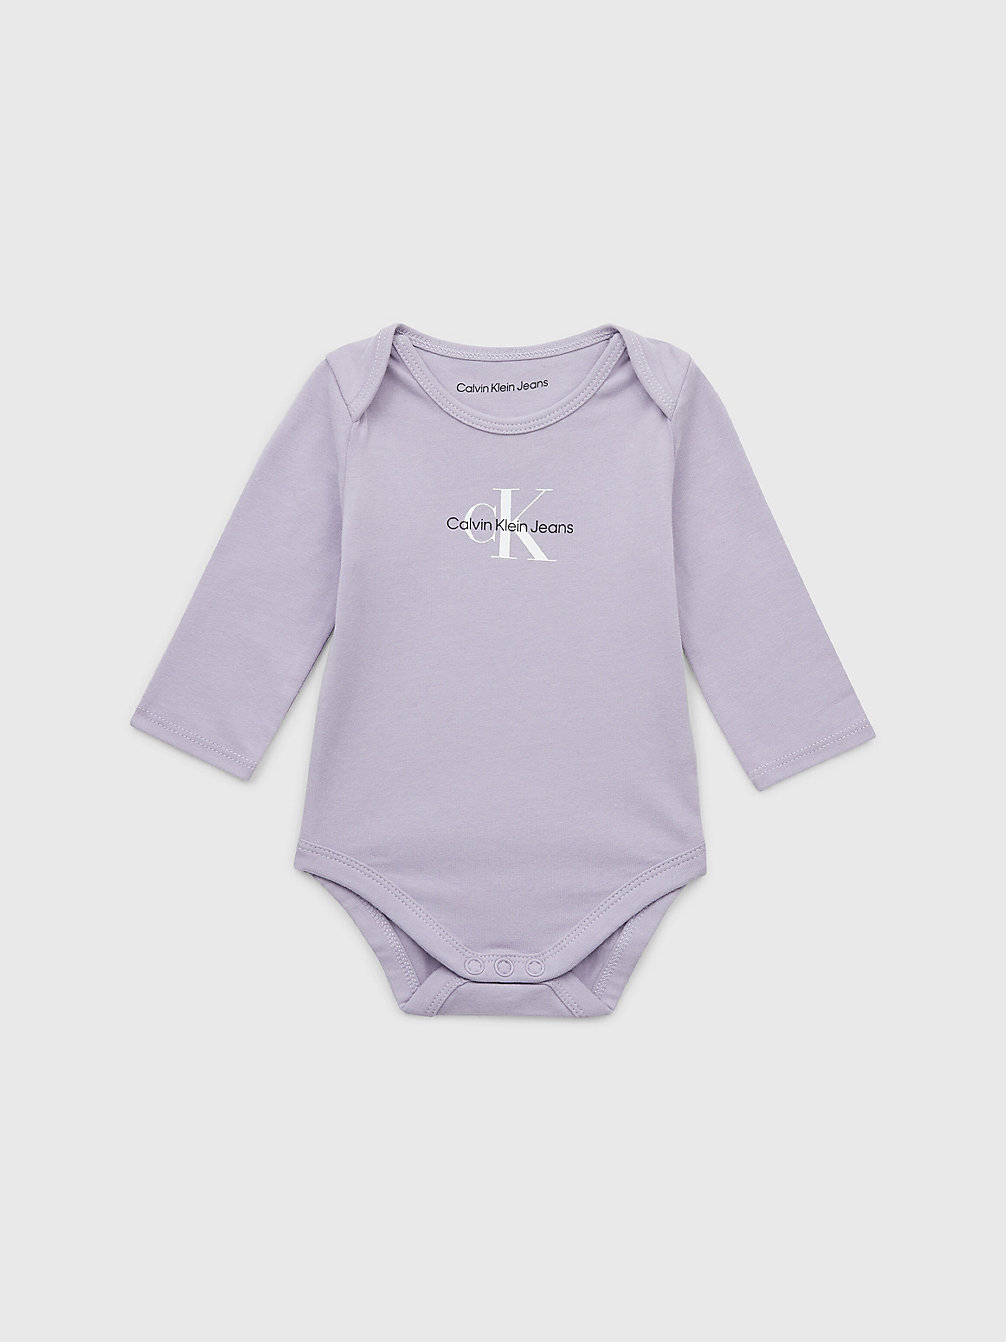 SMOKY LILAC Newborn Logo Bodysuit undefined newborn Calvin Klein